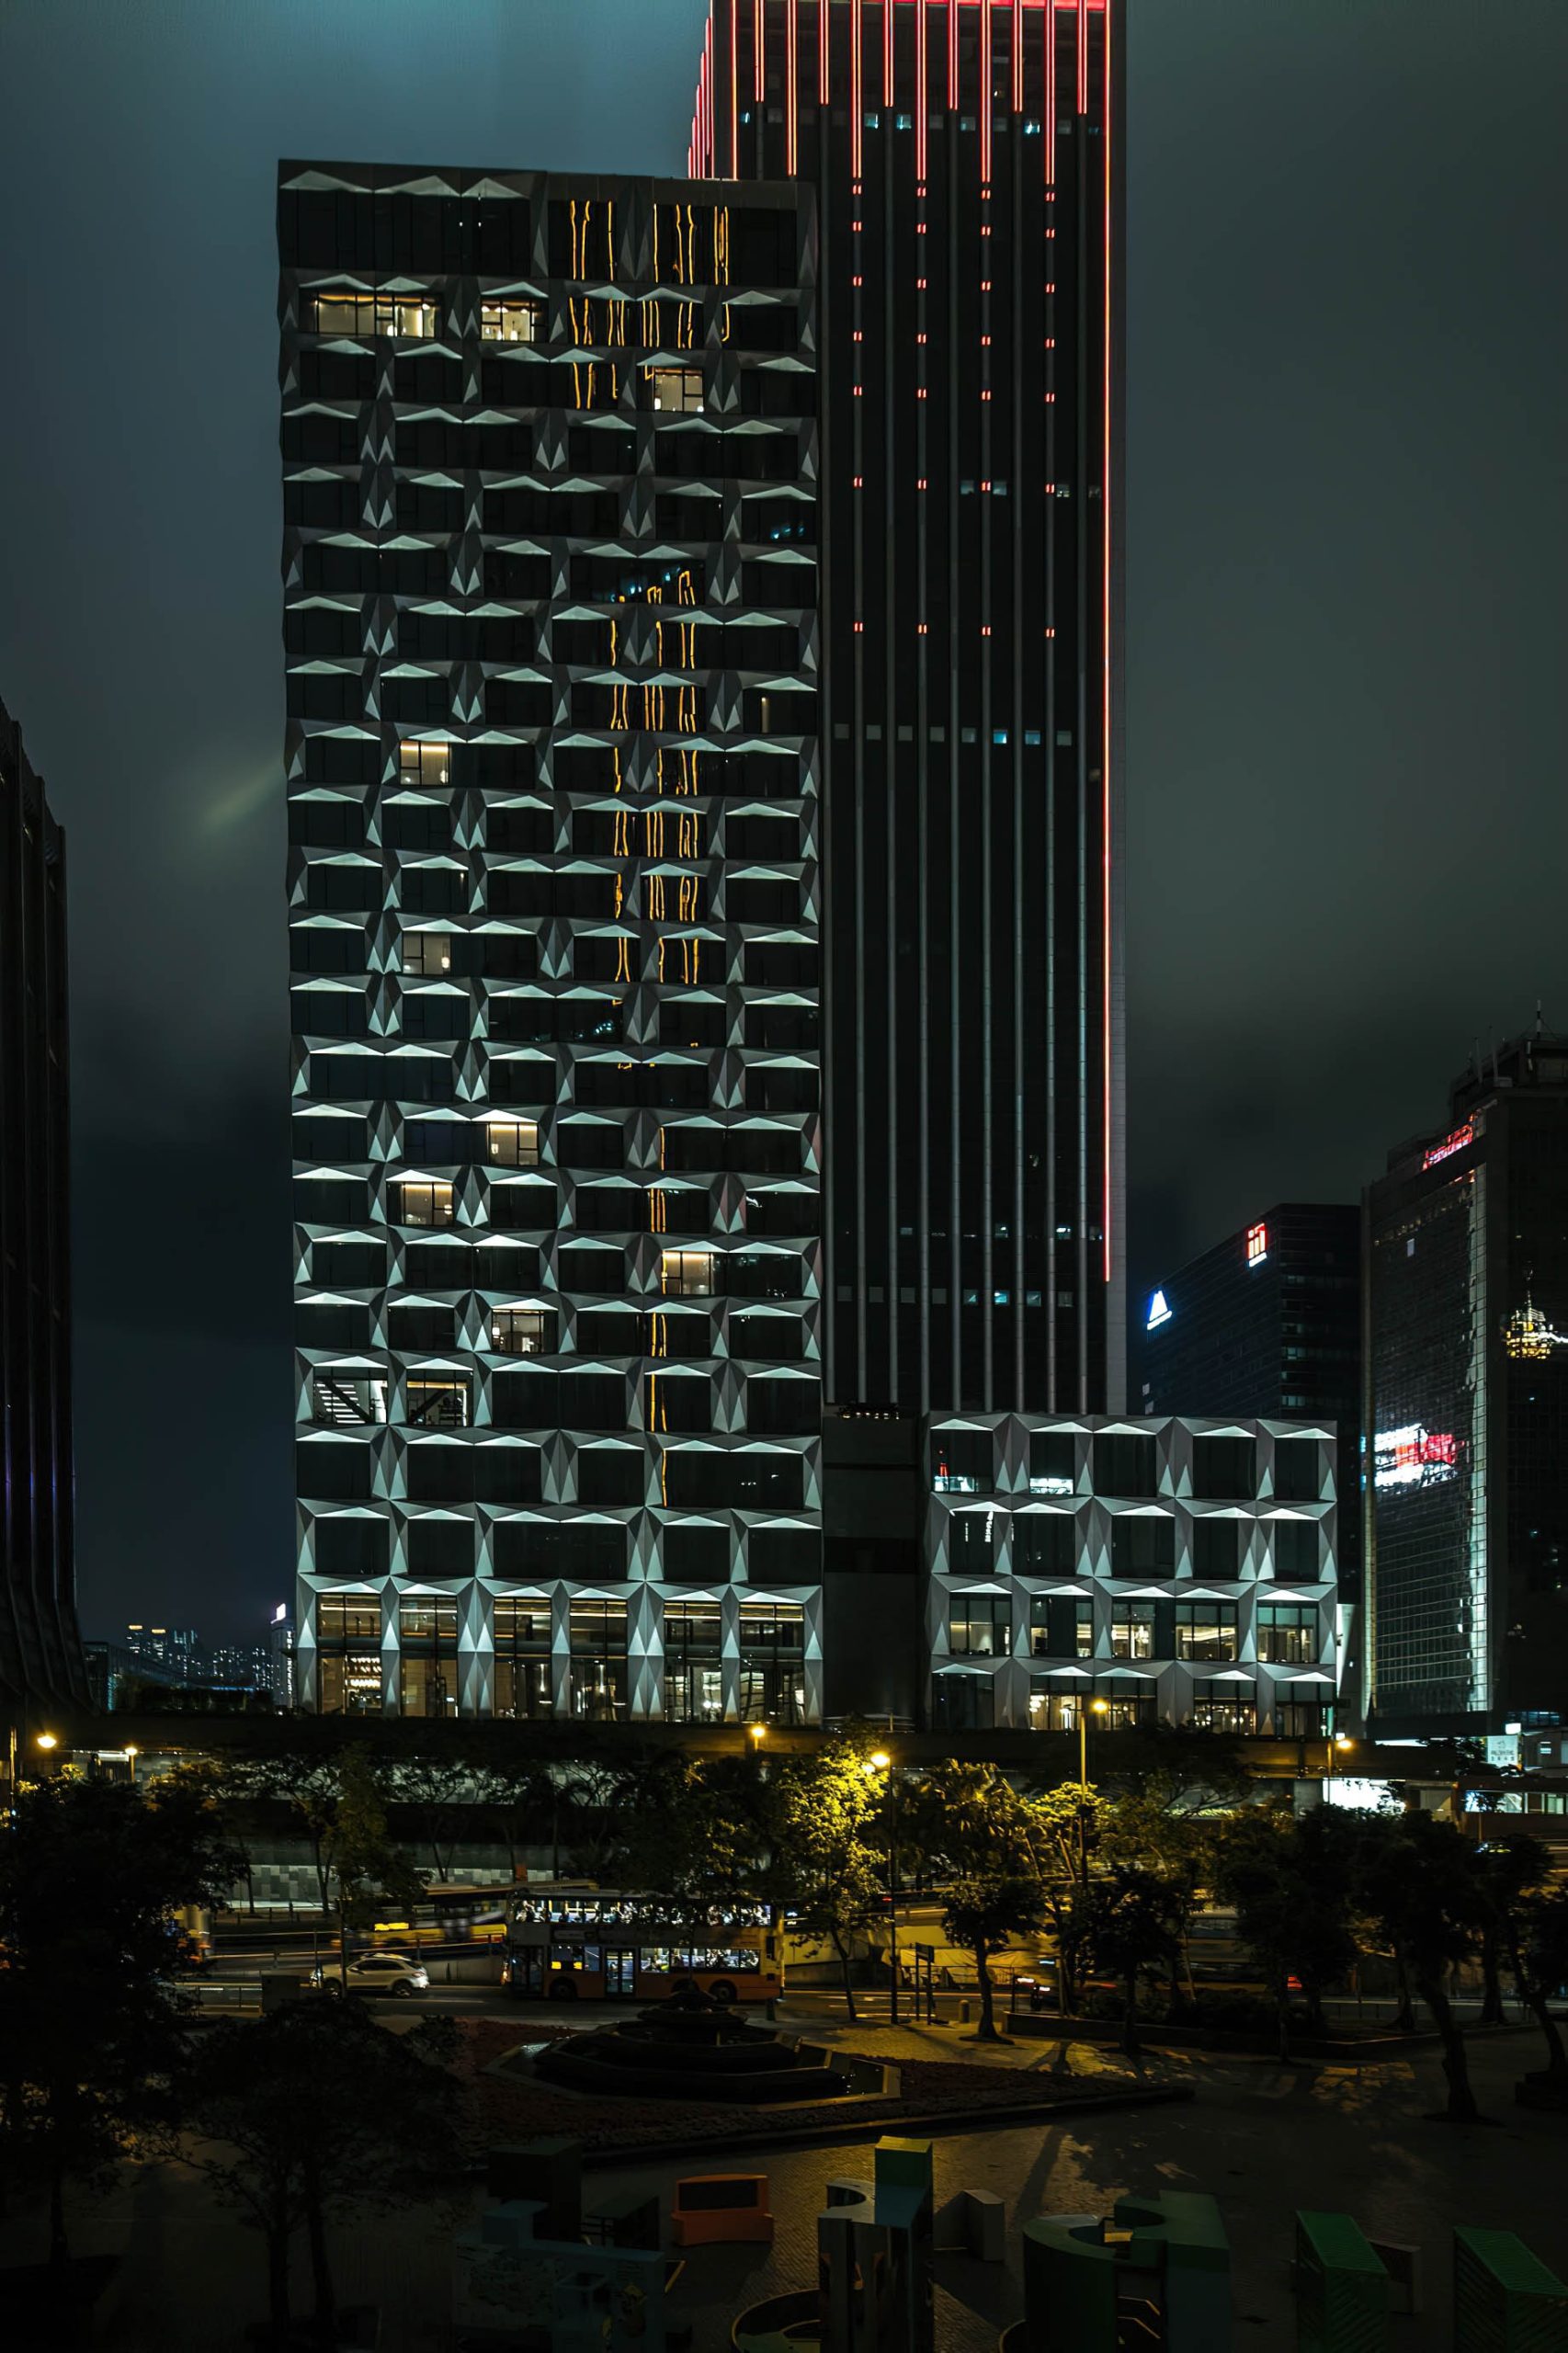 The St. Regis Hong Kong Hotel - Wan Chai, Hong Kong - Hotel Exterior Night View